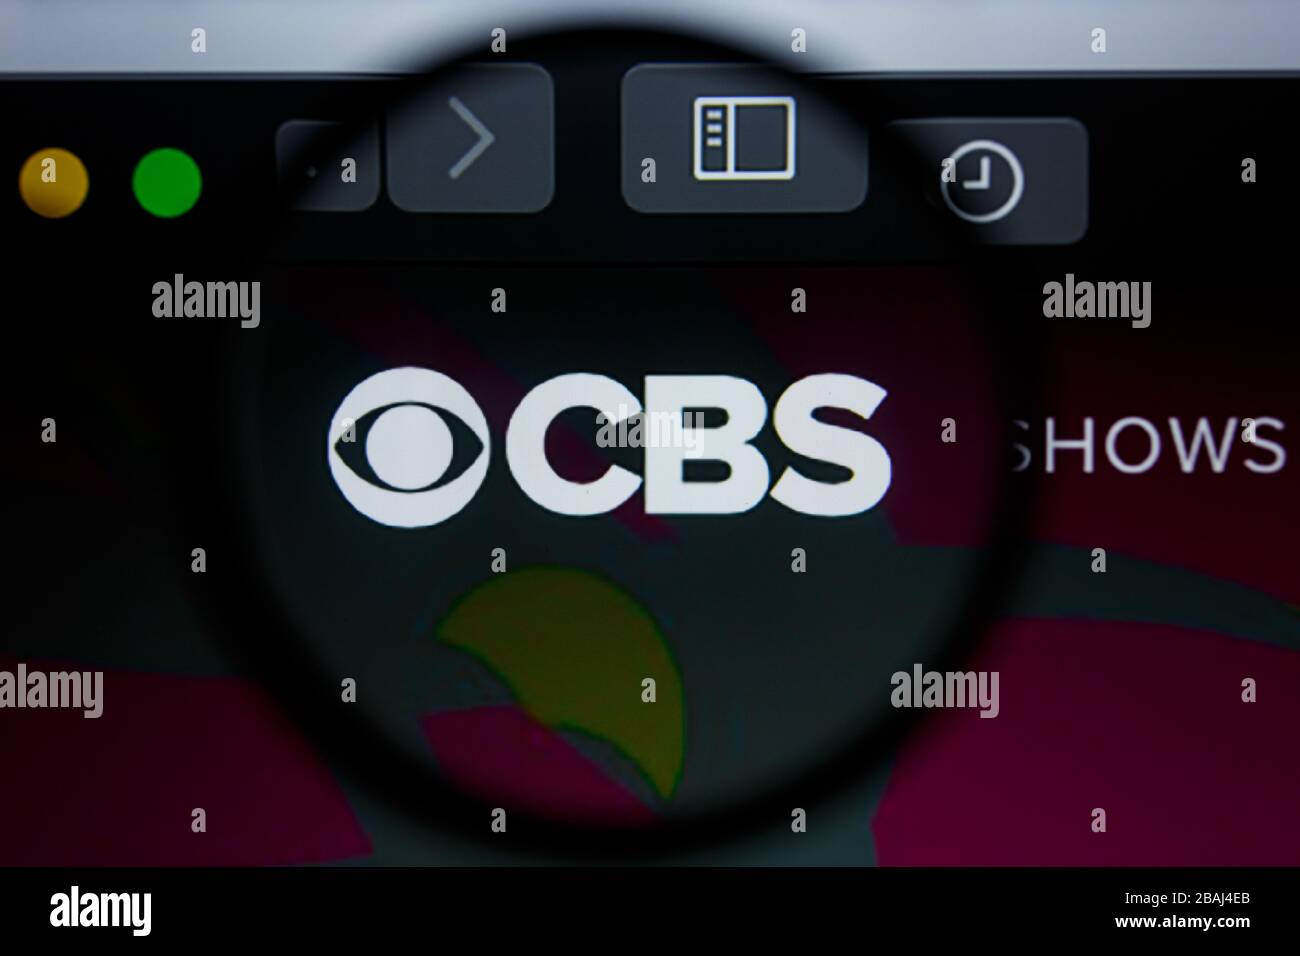 Los Angeles, Kalifornien, USA - 17. Juli 2019: Illudative Editorial der CBS Website Homepage. Das Logo des Columbia Broadcasting System wird auf dem Bildschirm angezeigt. Stockfoto